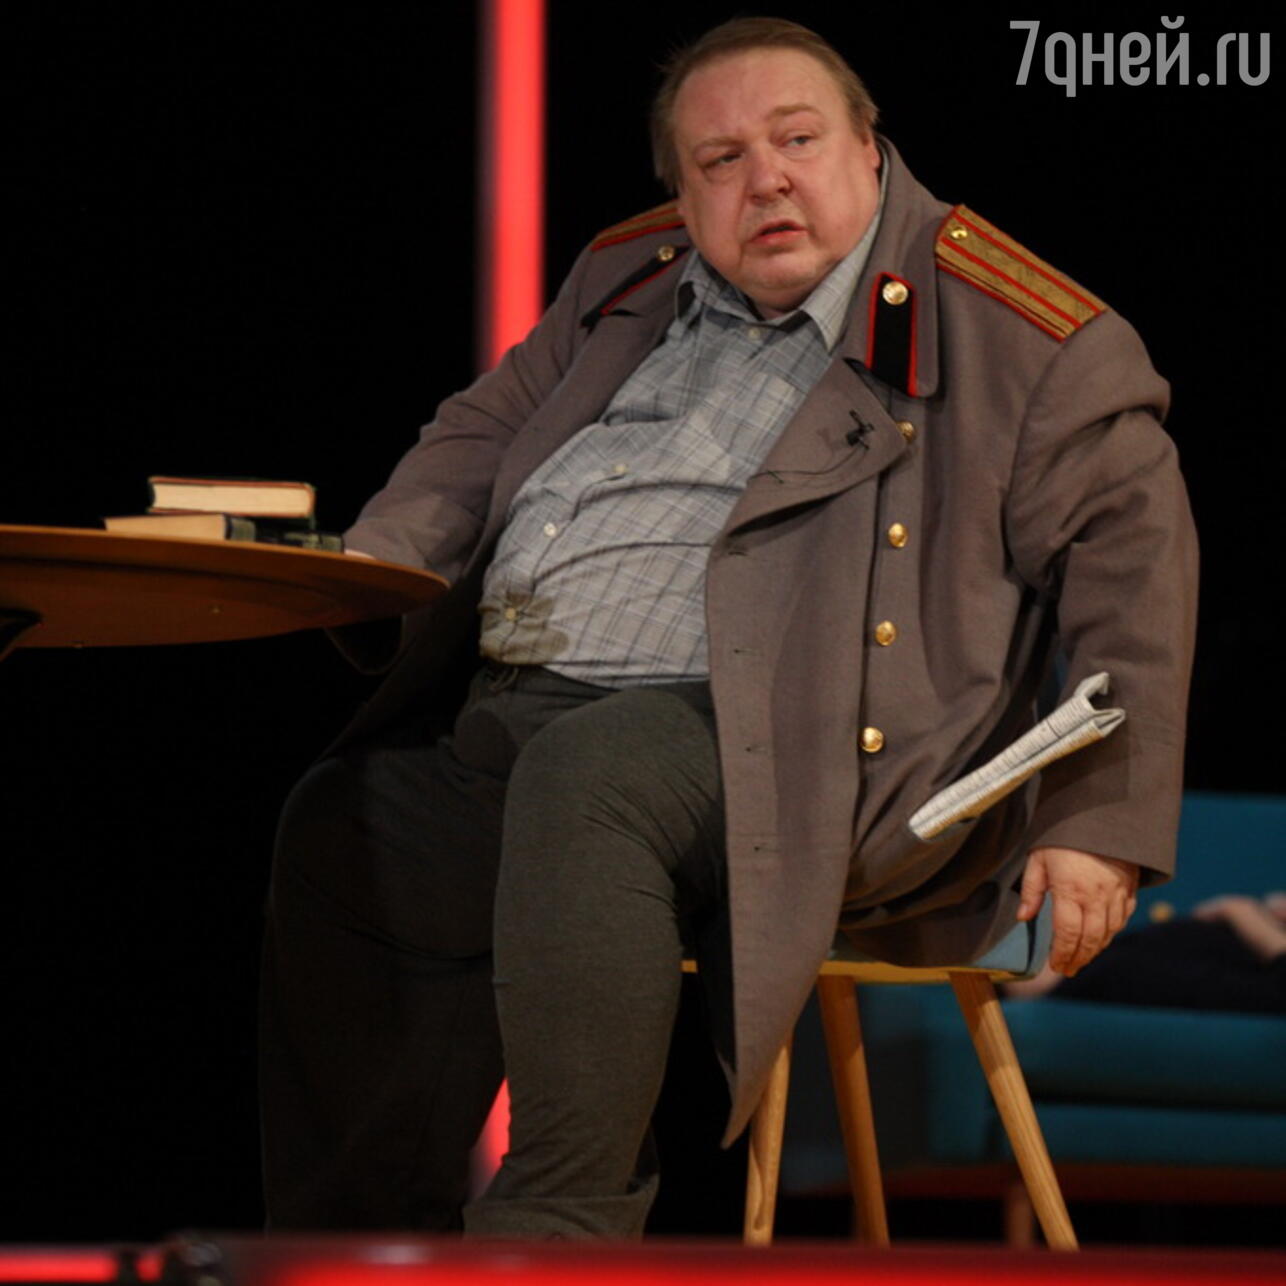 Александр Семчев в спектакле МХТ "Три сестры" 